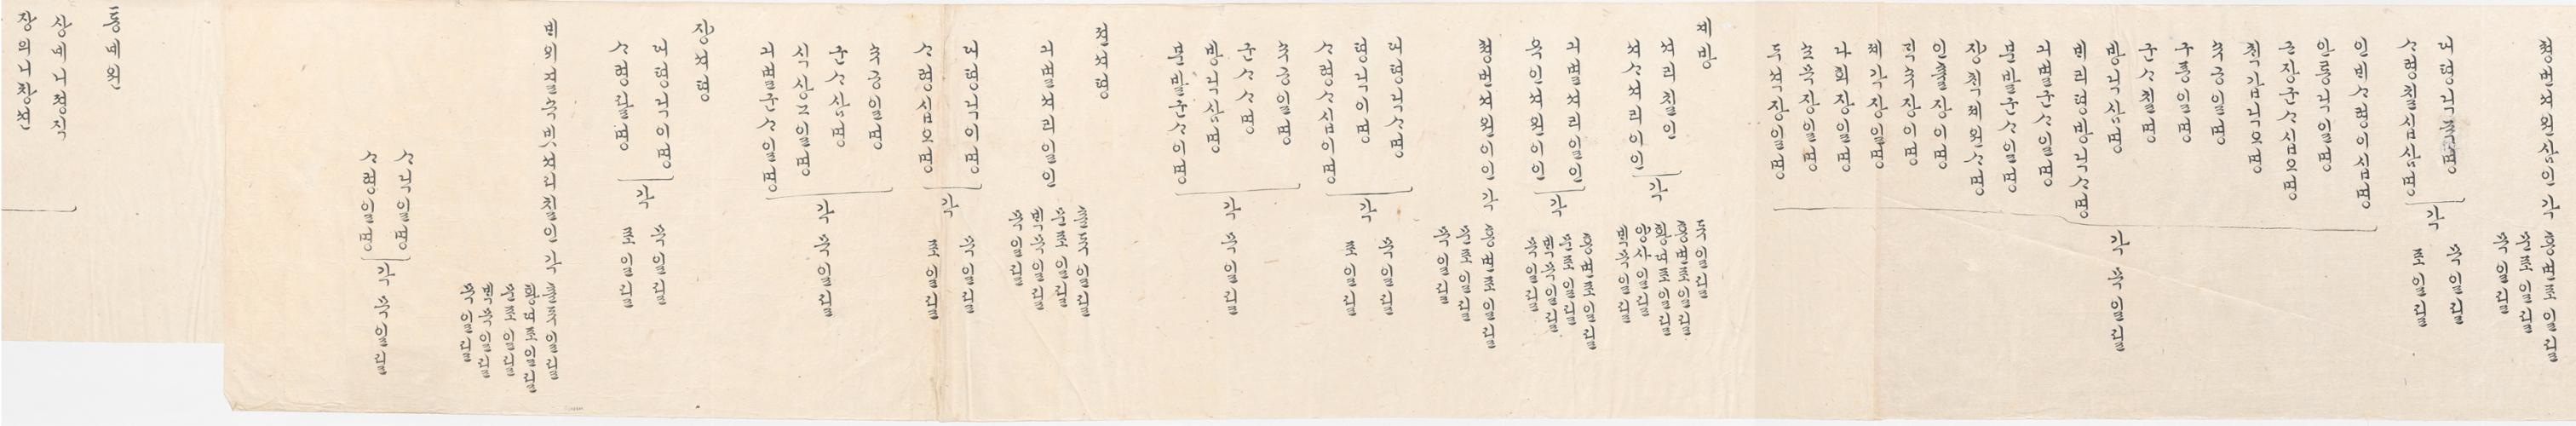 2_1894년 2월 왕세자 탄일 기념 상격 발기 2.jpg